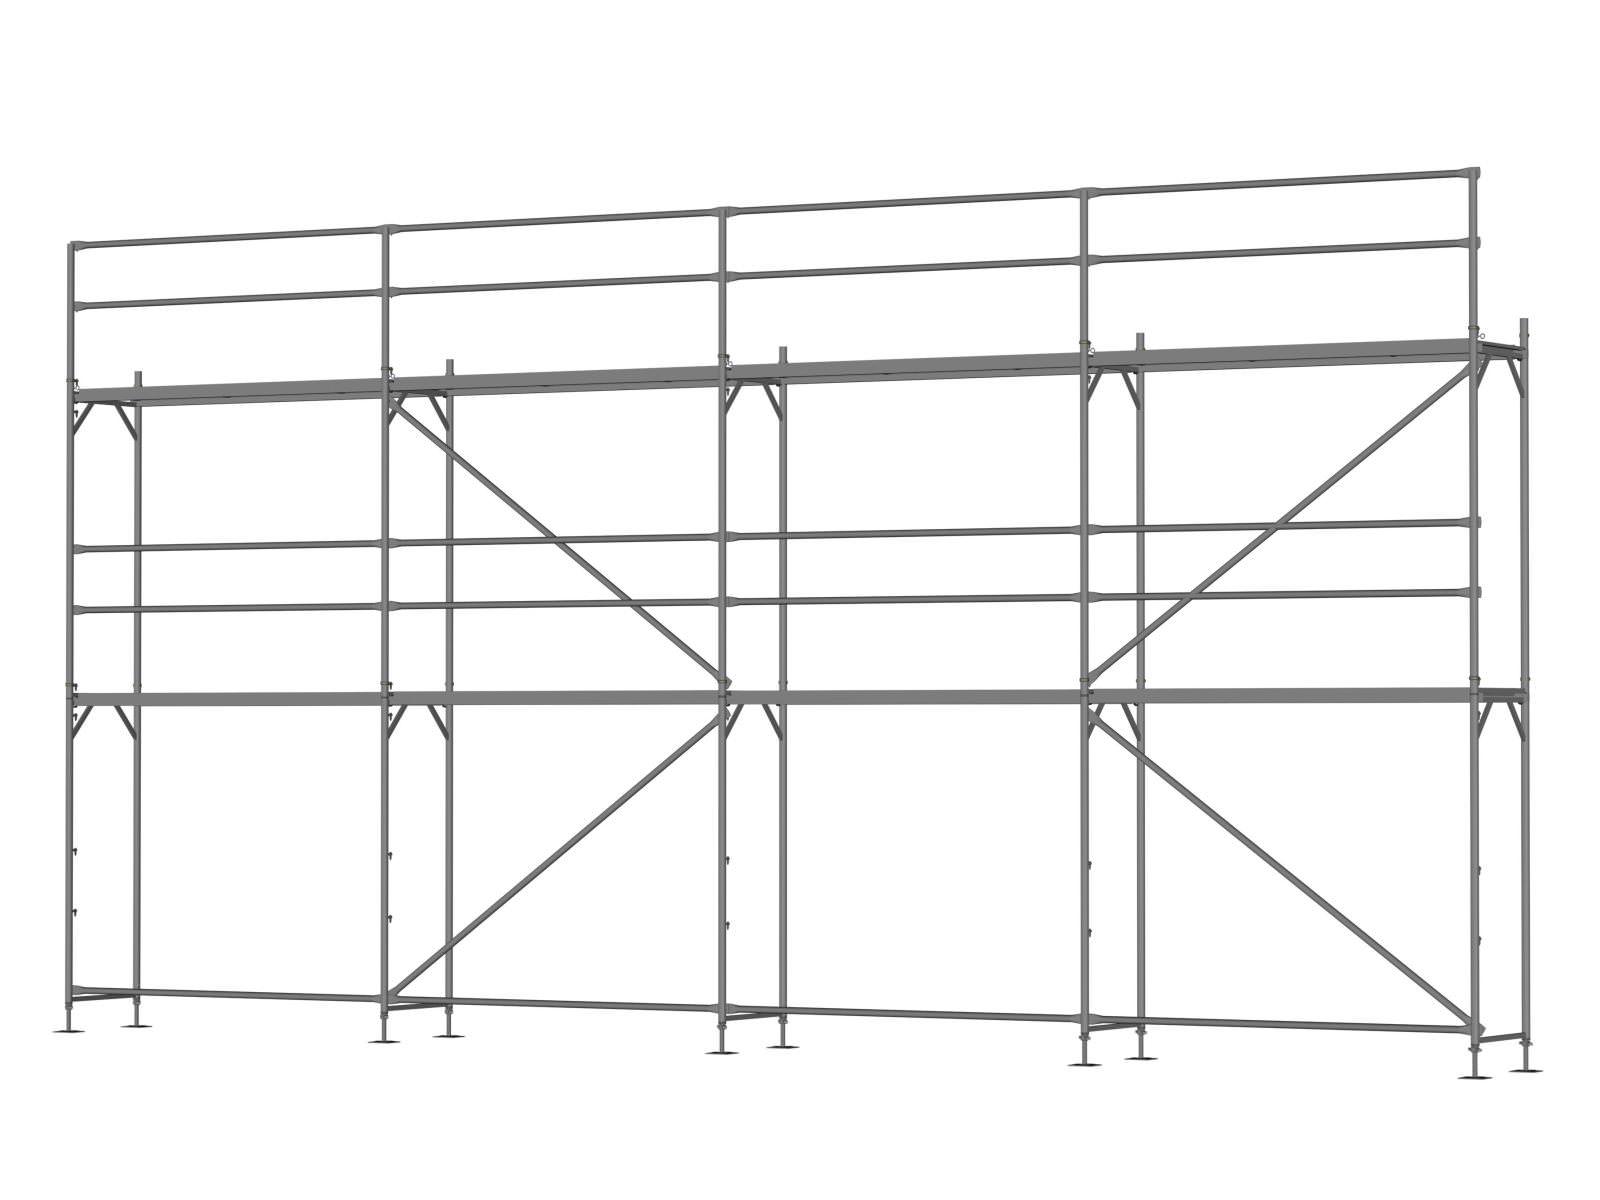 Stahl Traufseitengerüst 60 qm - 2,5 m Felder - 10 m lang - 6 m Arbeitshöhe - Basis-Gerüst